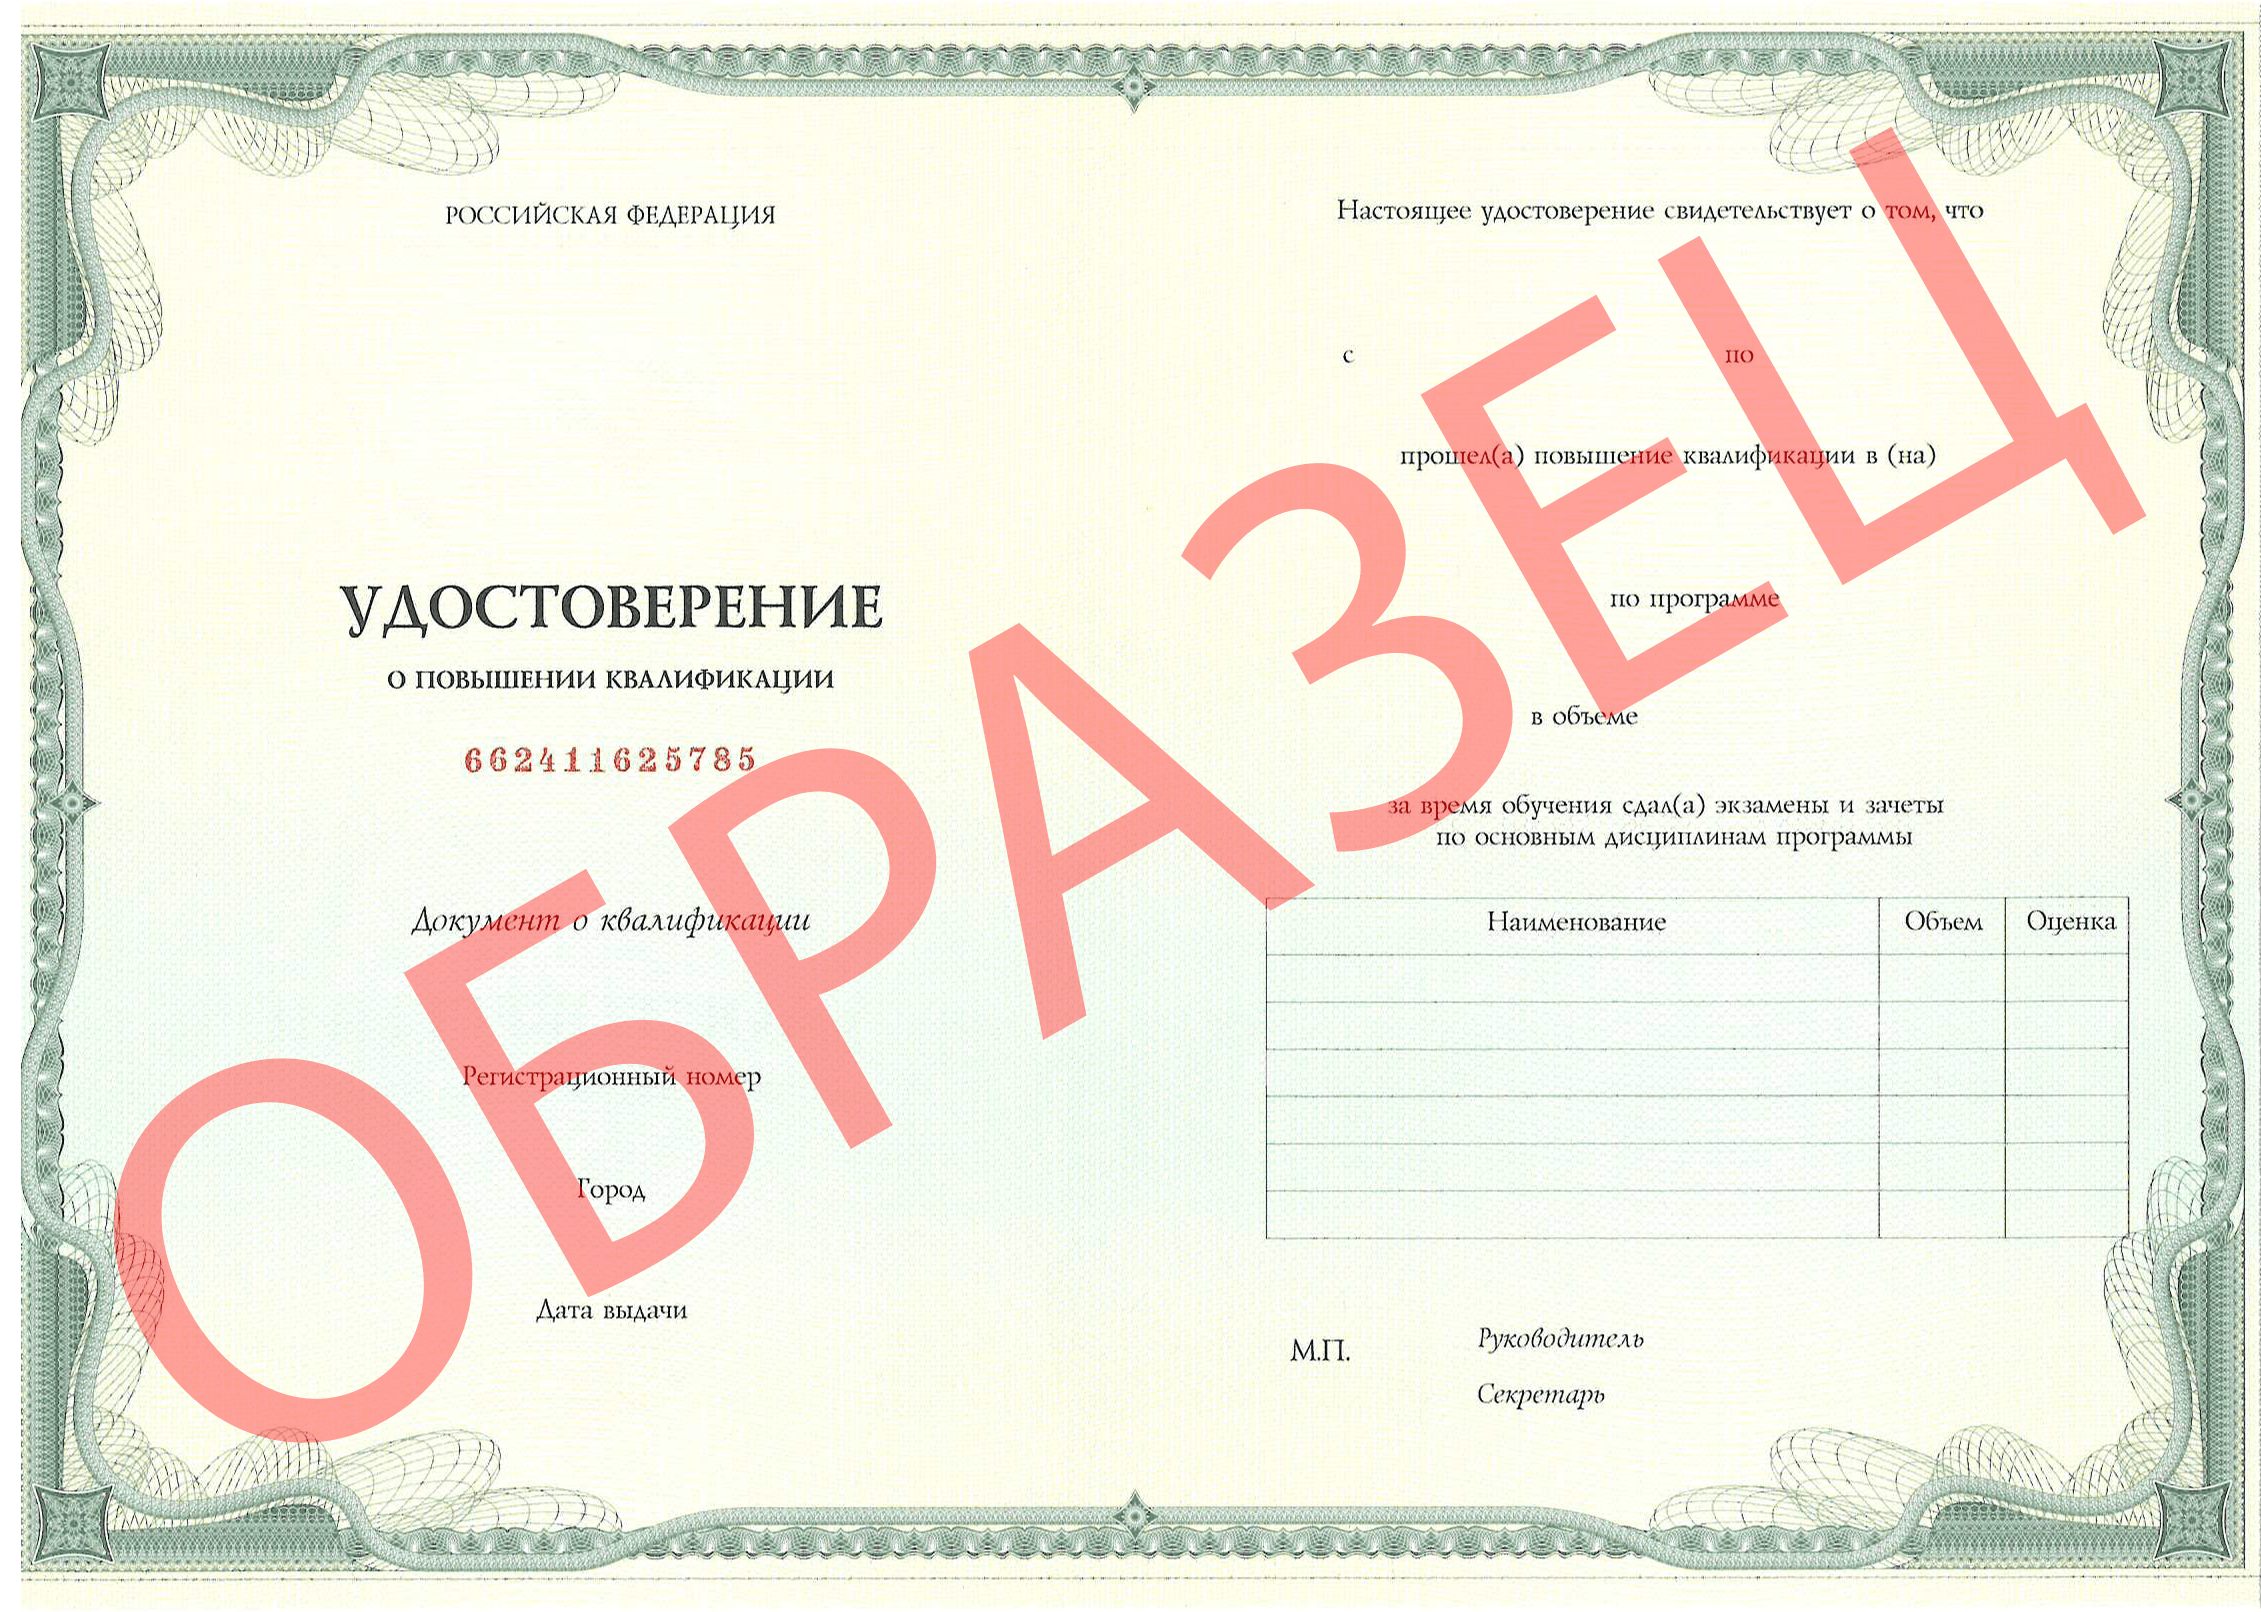 Образец документа о прохождении обучения - Паспорт аккредитации по специальности "Дерматовенерология" 0000-адв